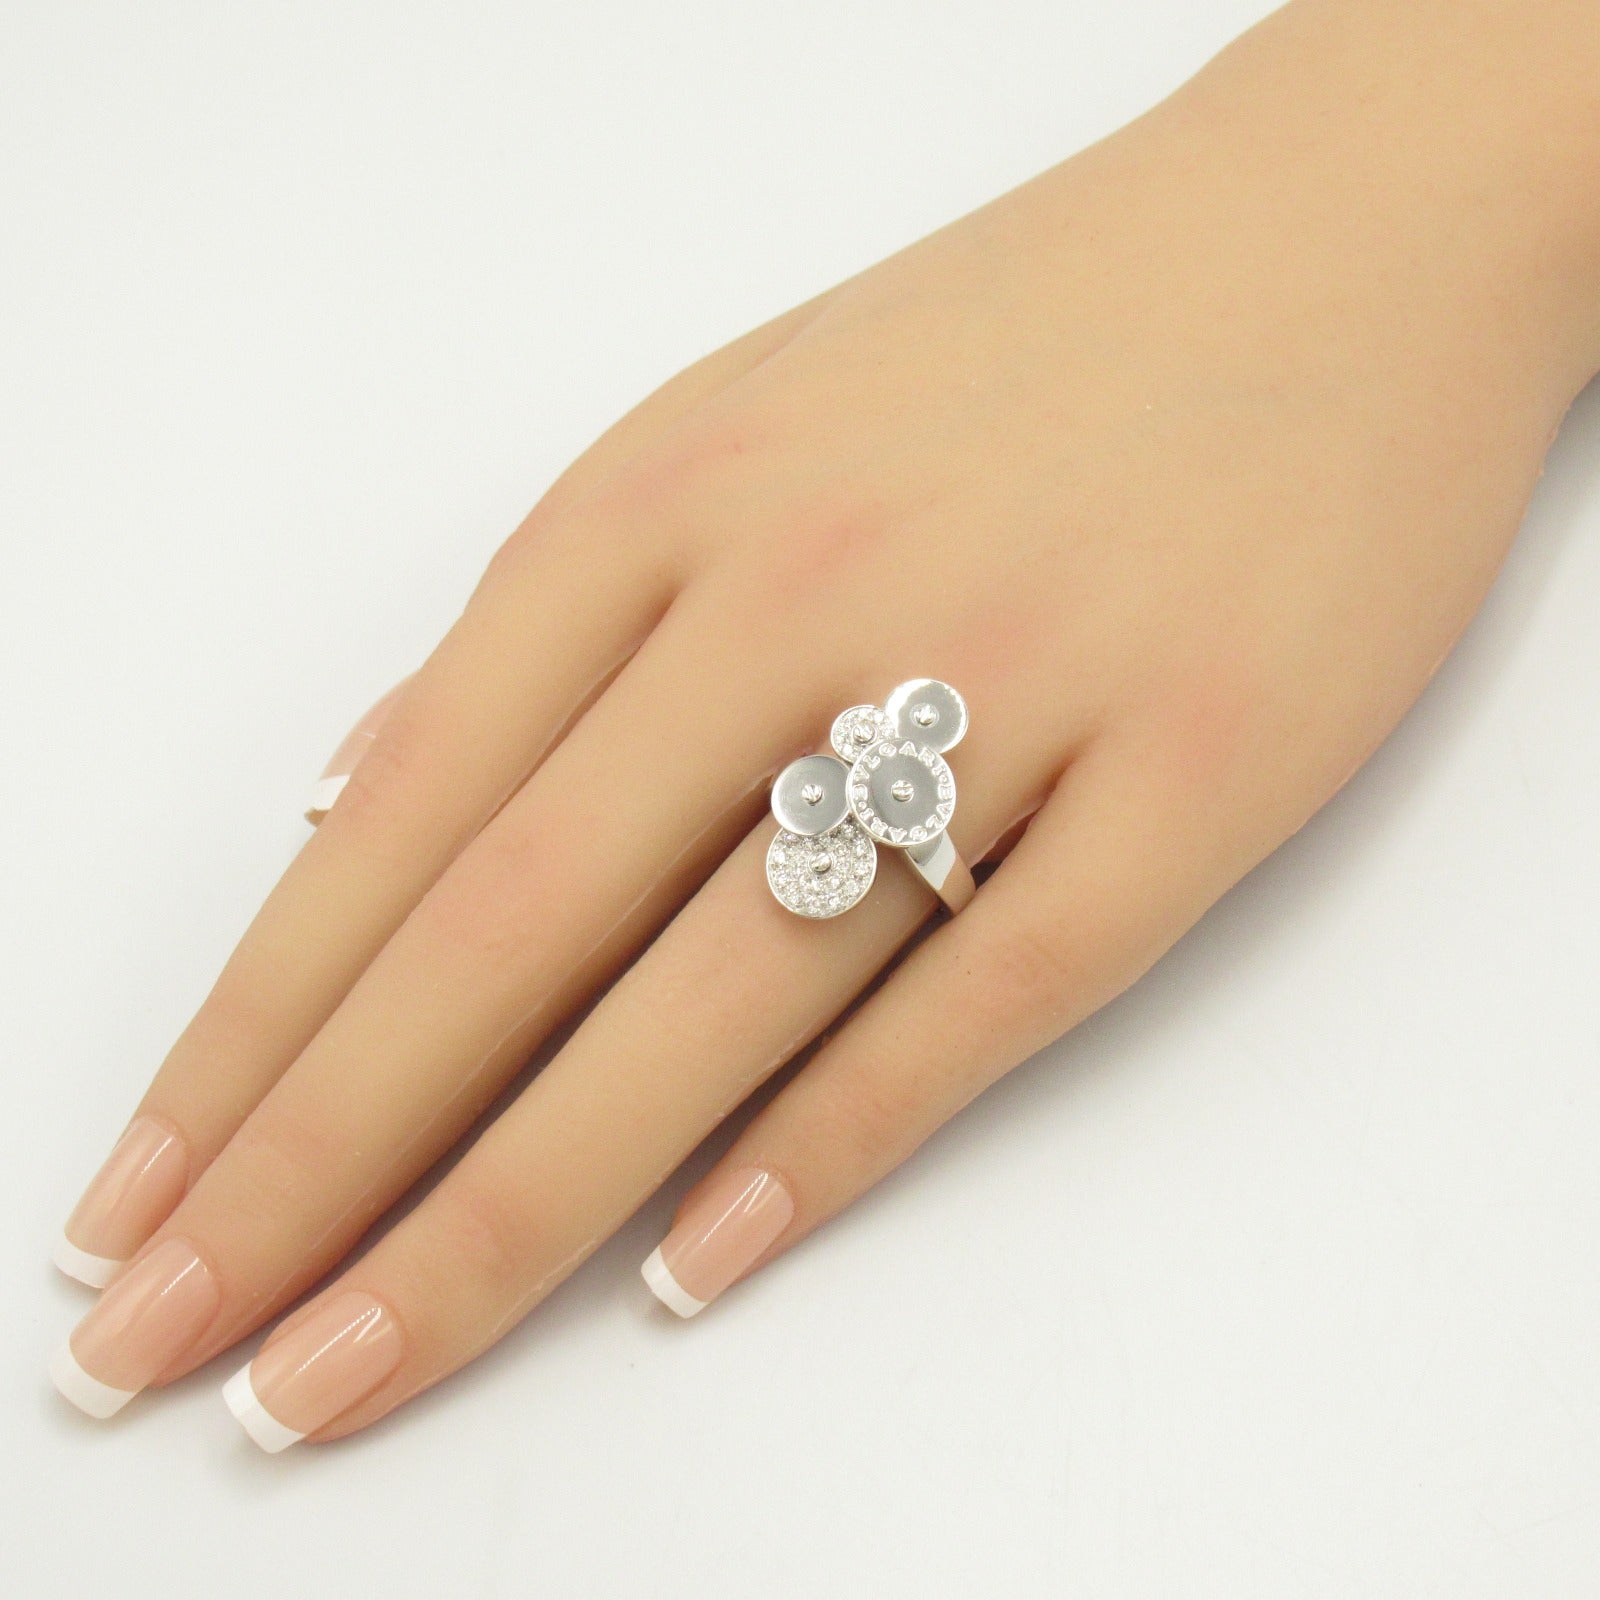 Bulgari BVLGARI Cyc Diamond Ring Ring and Ring Jewelry K18WG (White G) Diamond  Clearance